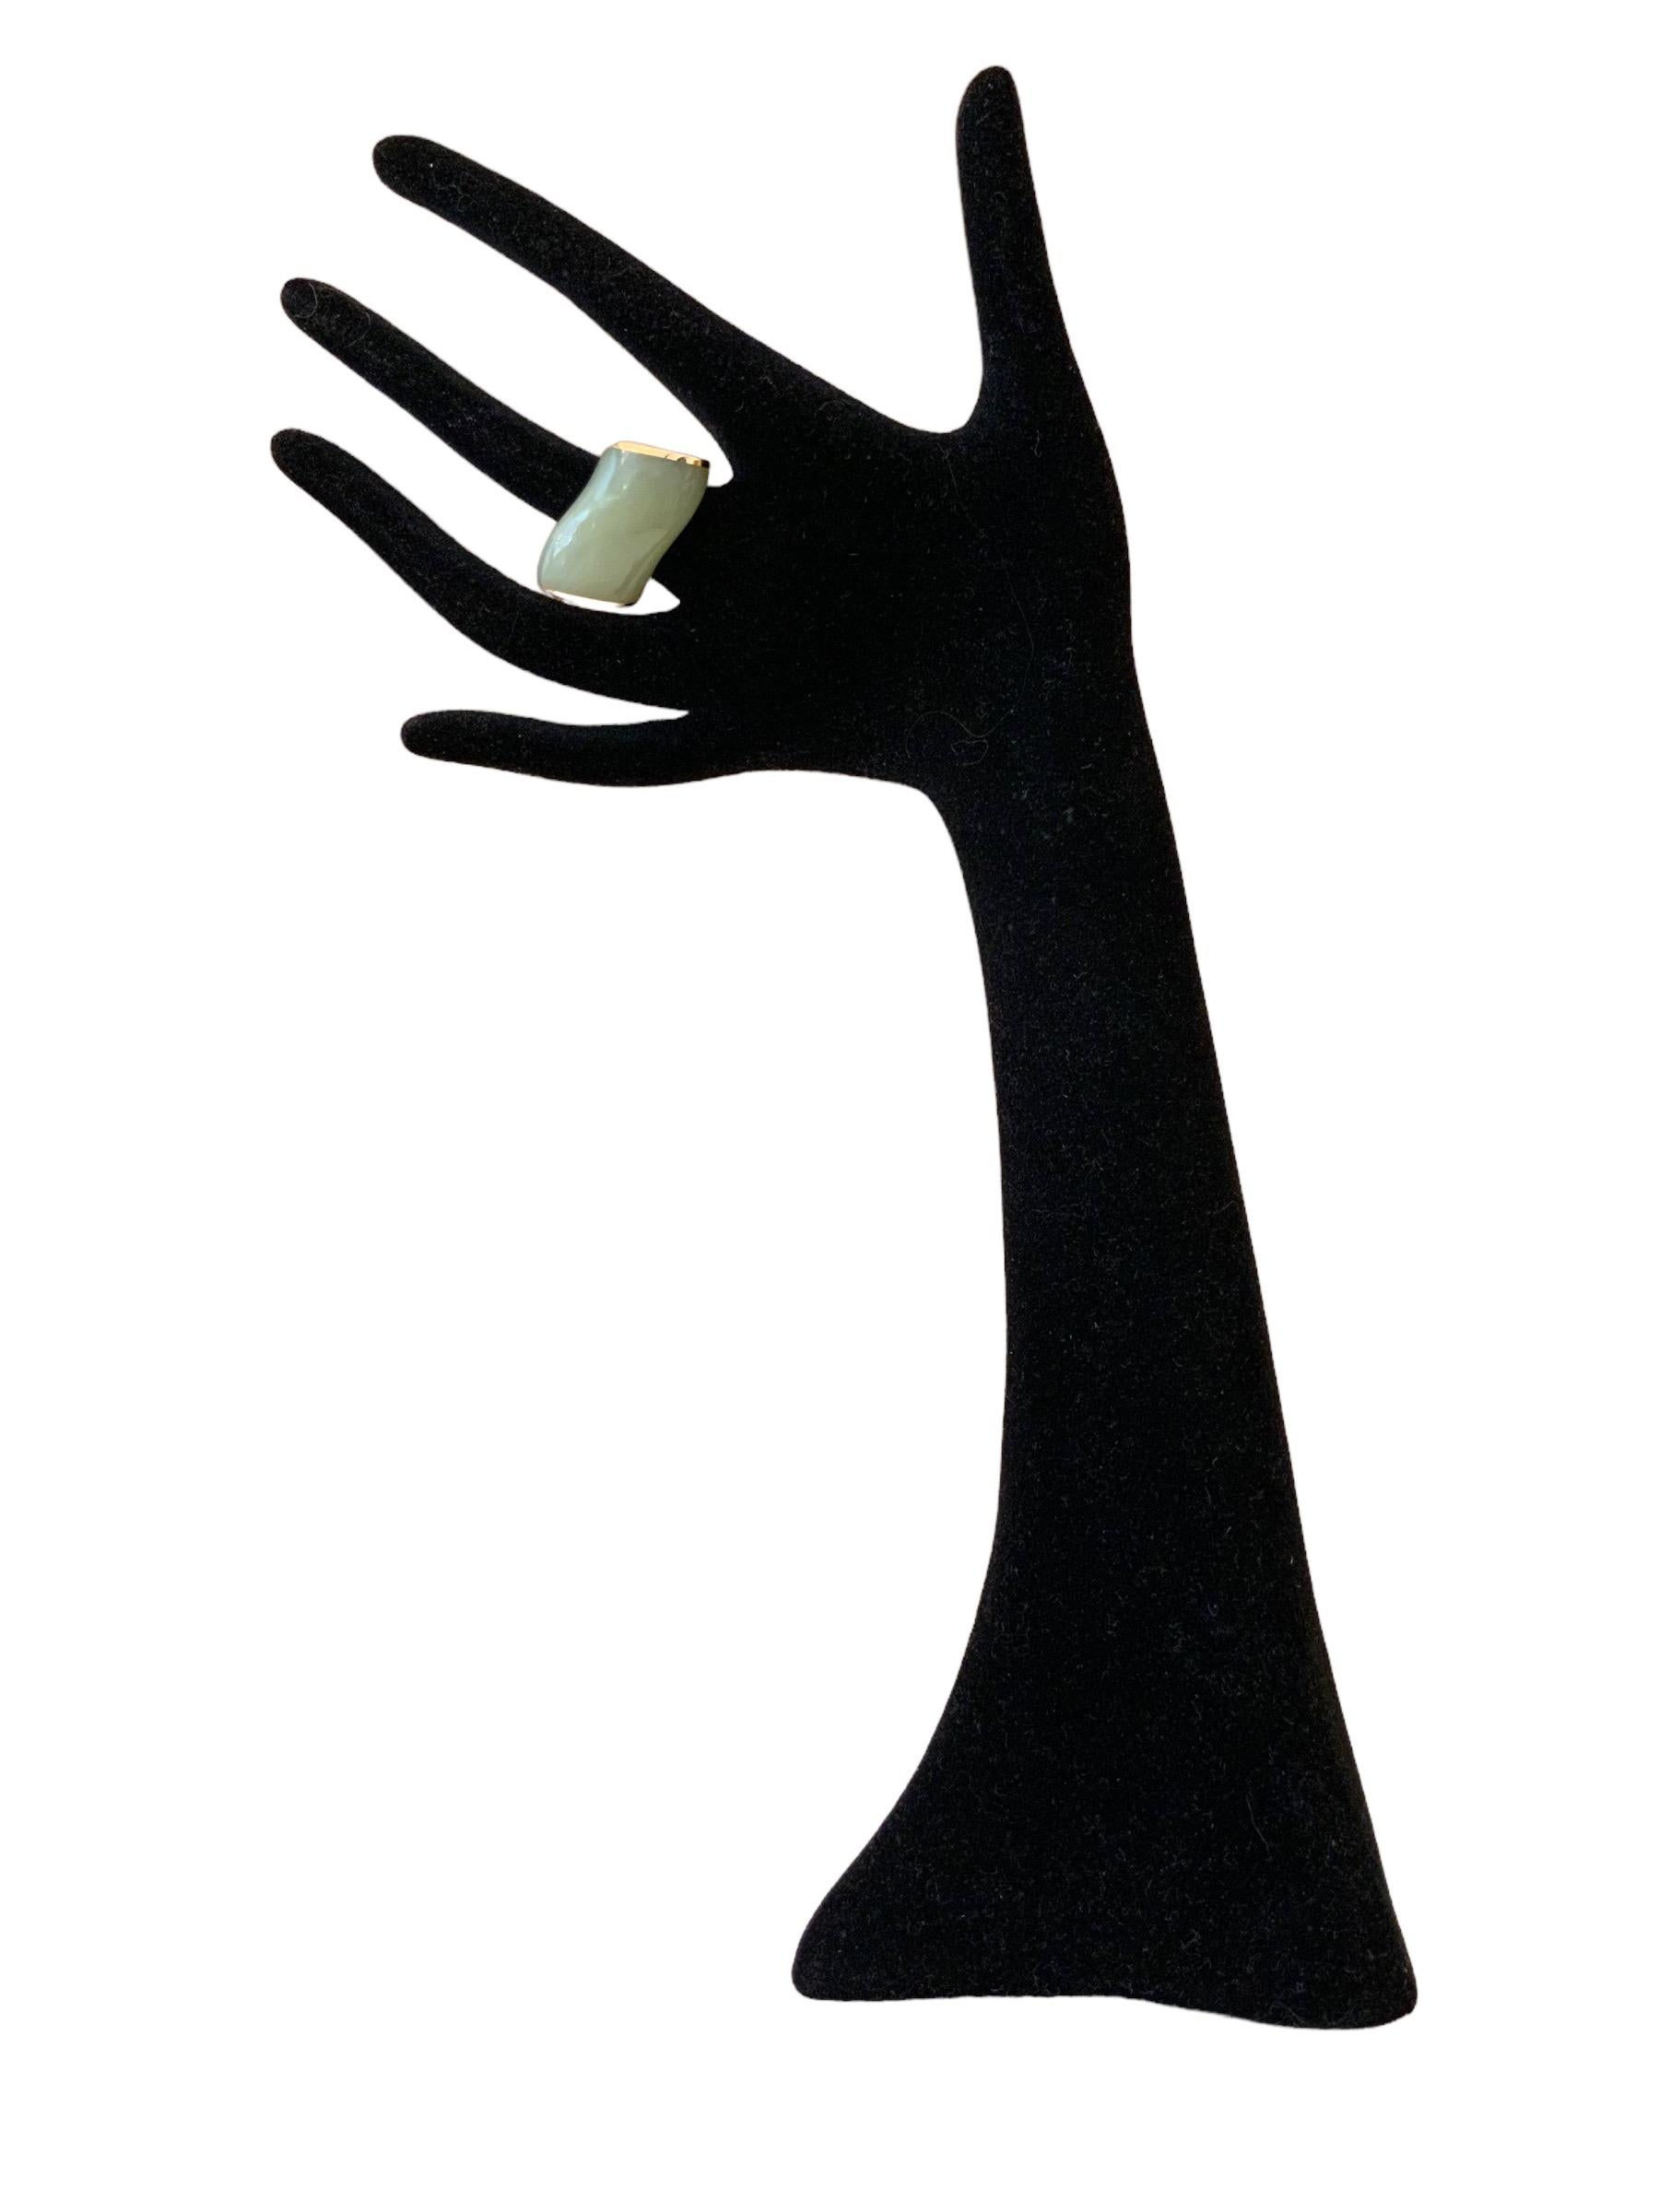 Fabelhafter und spektakulärer Ring aus 18 Karat Roségold von Vhernier aus Vorbesitz.
Er ist aus 18 Karat Roségold gefertigt und mit Cabochon-Jade besetzt. 
Dieser Vhernier-Ring ist sehr selten, modern und unkonventionell. 

Collection'S: